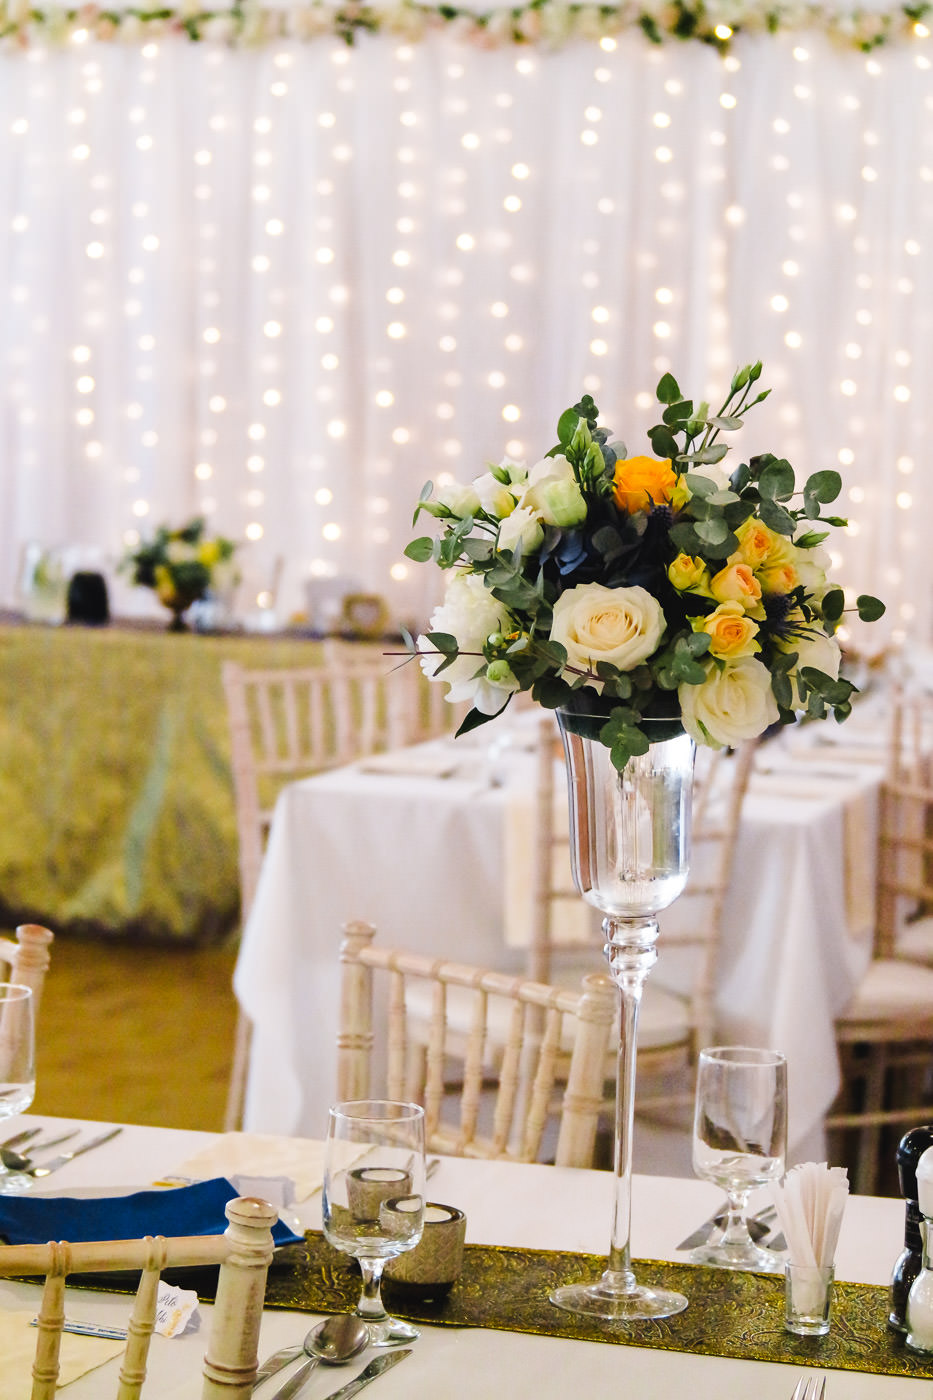 Susan&Sis decor svadobna vyzdoba - dekorovanie- luxusna zlato modra svadba - biele, zlte, modre kvety, zlate obrusy, svadba v bielom stane